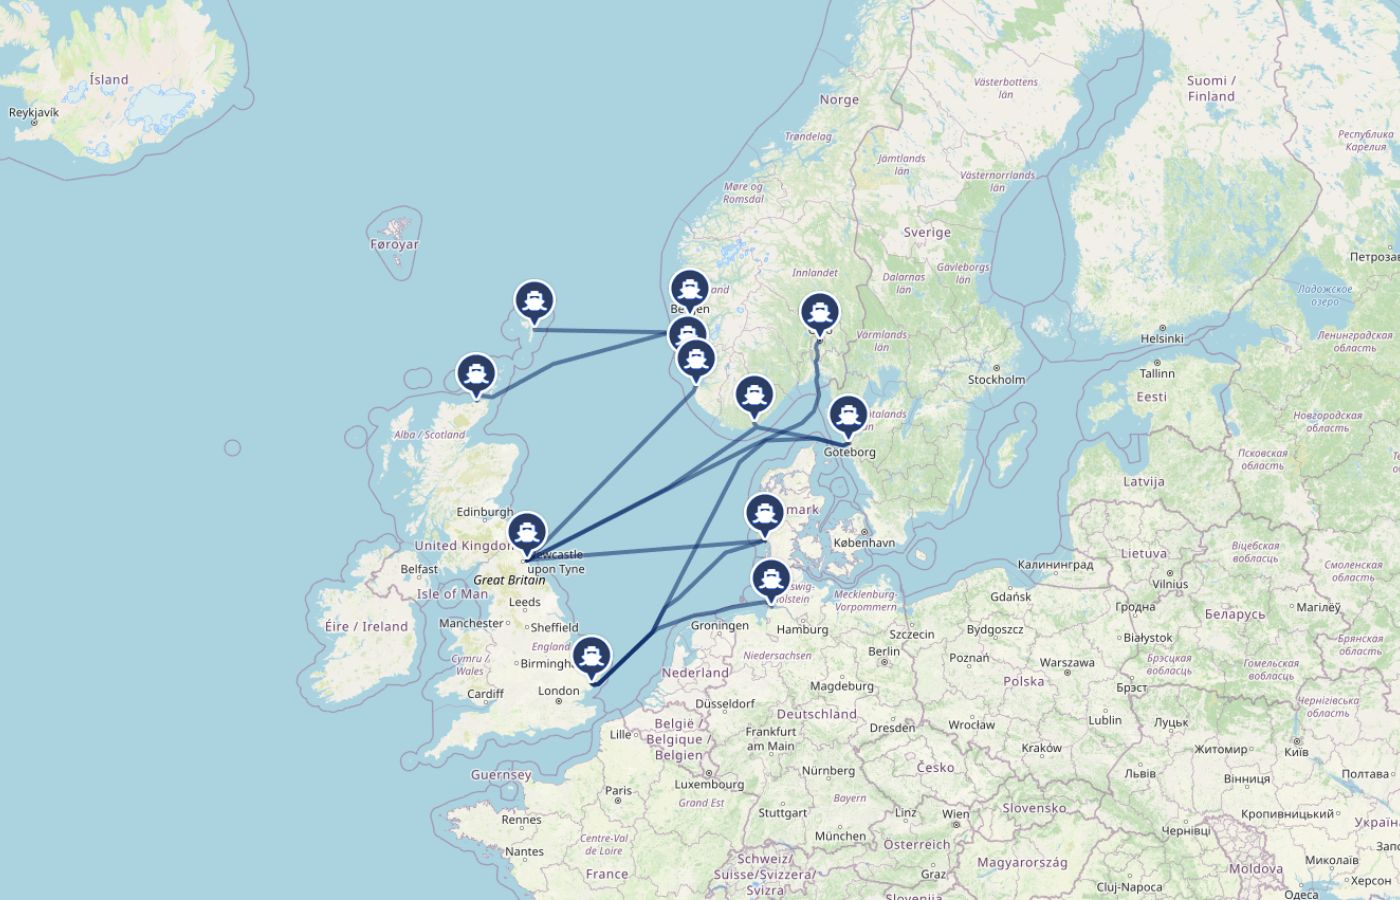 Kaart met oude overtochten van Engeland naar Noorwegen, Denemarken en Zweden